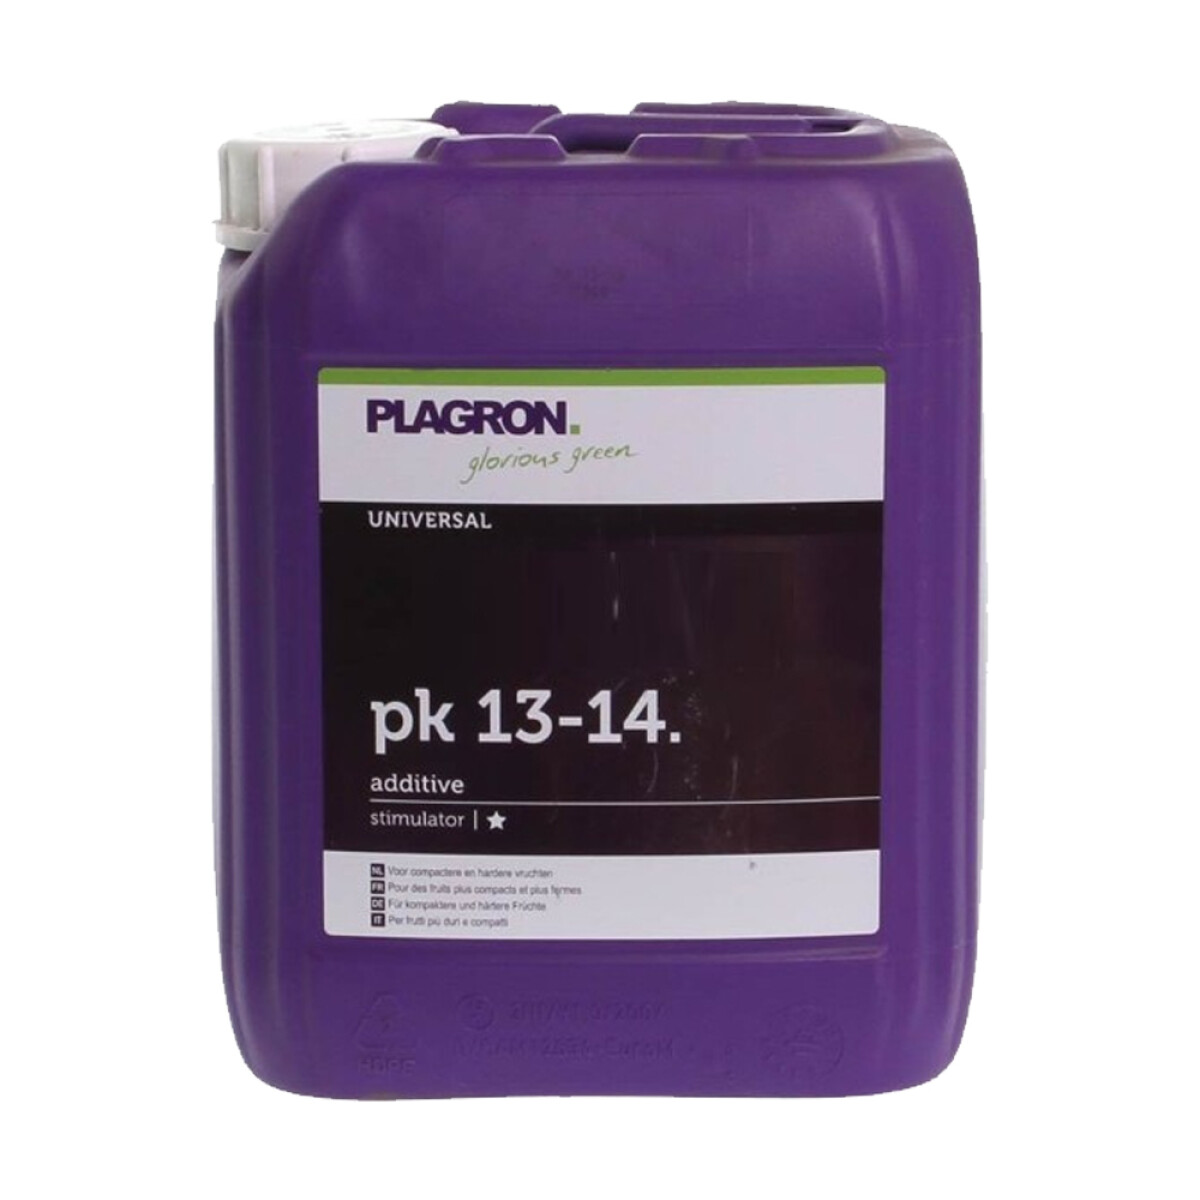 PK 13-14 PLAGRON - 5L 